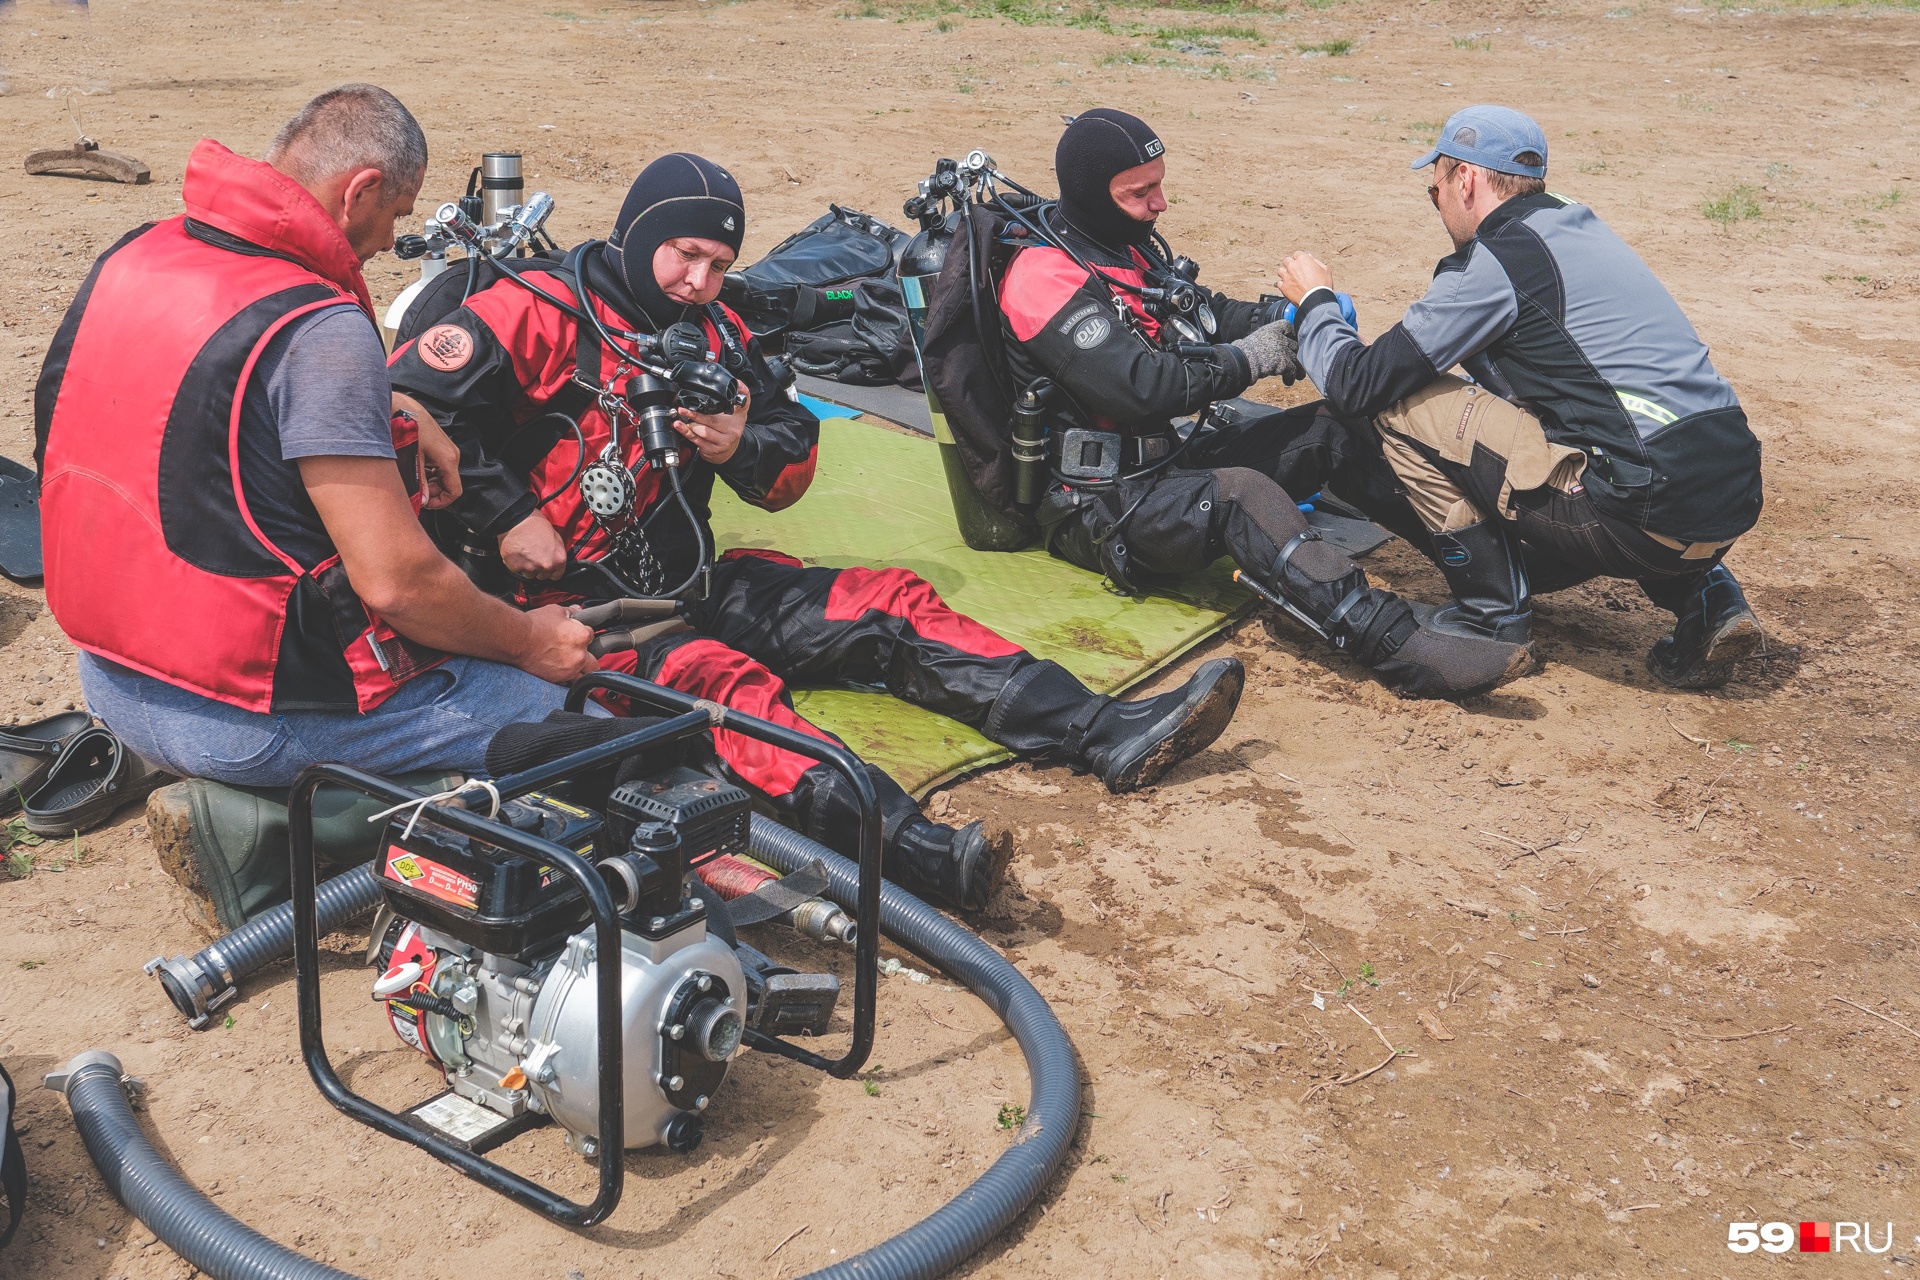 Под водой дайверы должны подготовить машину к подъему: прицепить тросы от подводных парашютов, надеть сверху сеть и полностью контролировать положение машины в воде